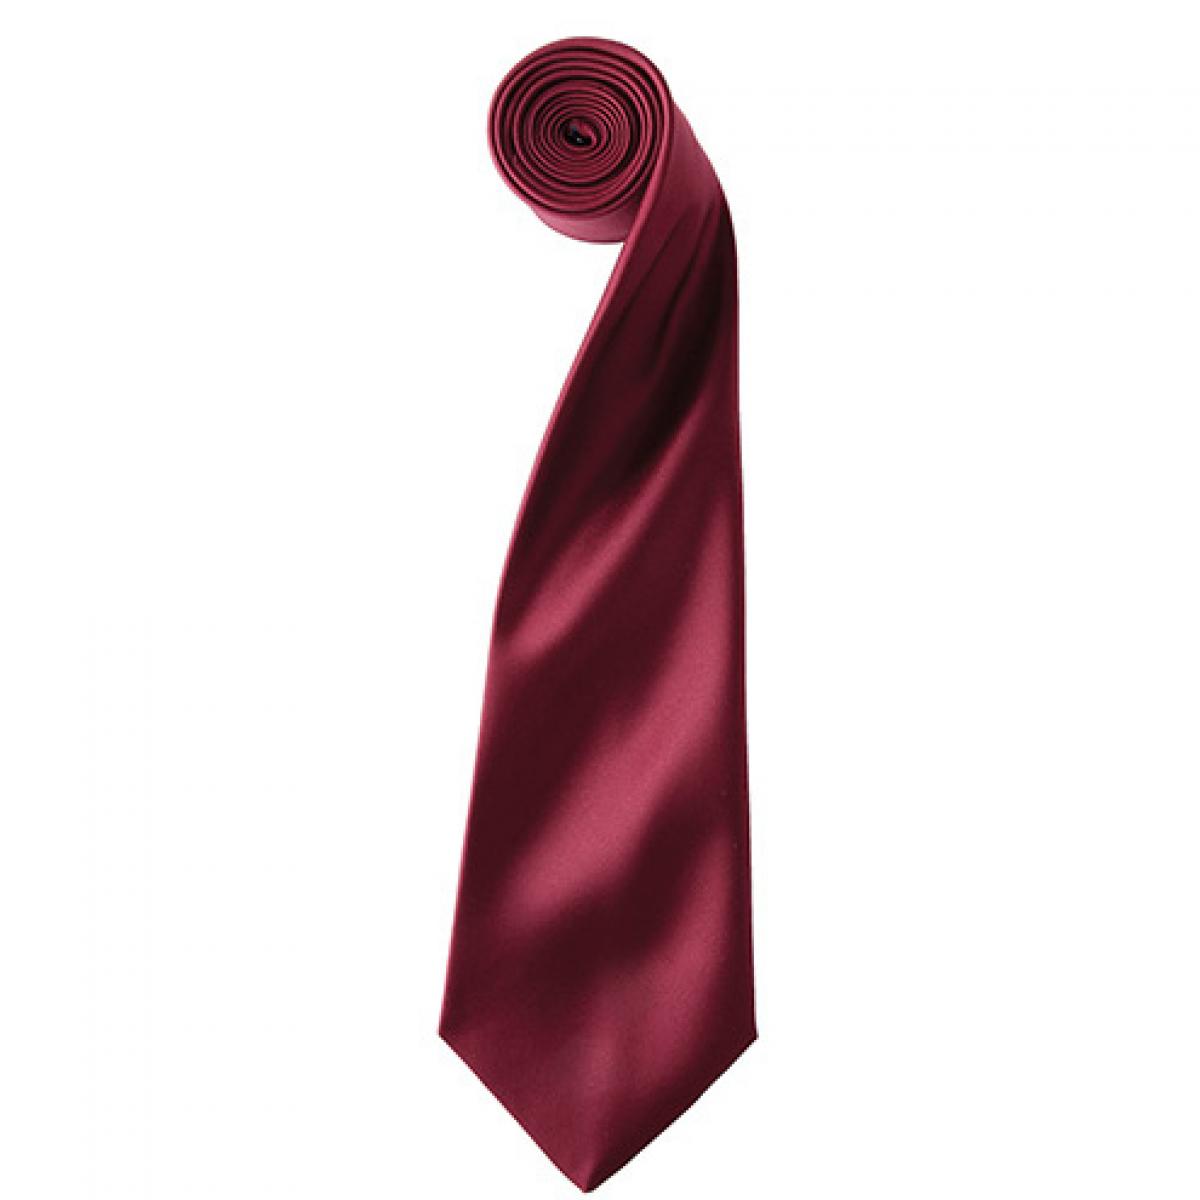 Hersteller: Premier Workwear Herstellernummer: PR750 Artikelbezeichnung: Satin Tie ´Colours´ / 144 x 8,5 cm Farbe: Burgundy (ca. Pantone 216)